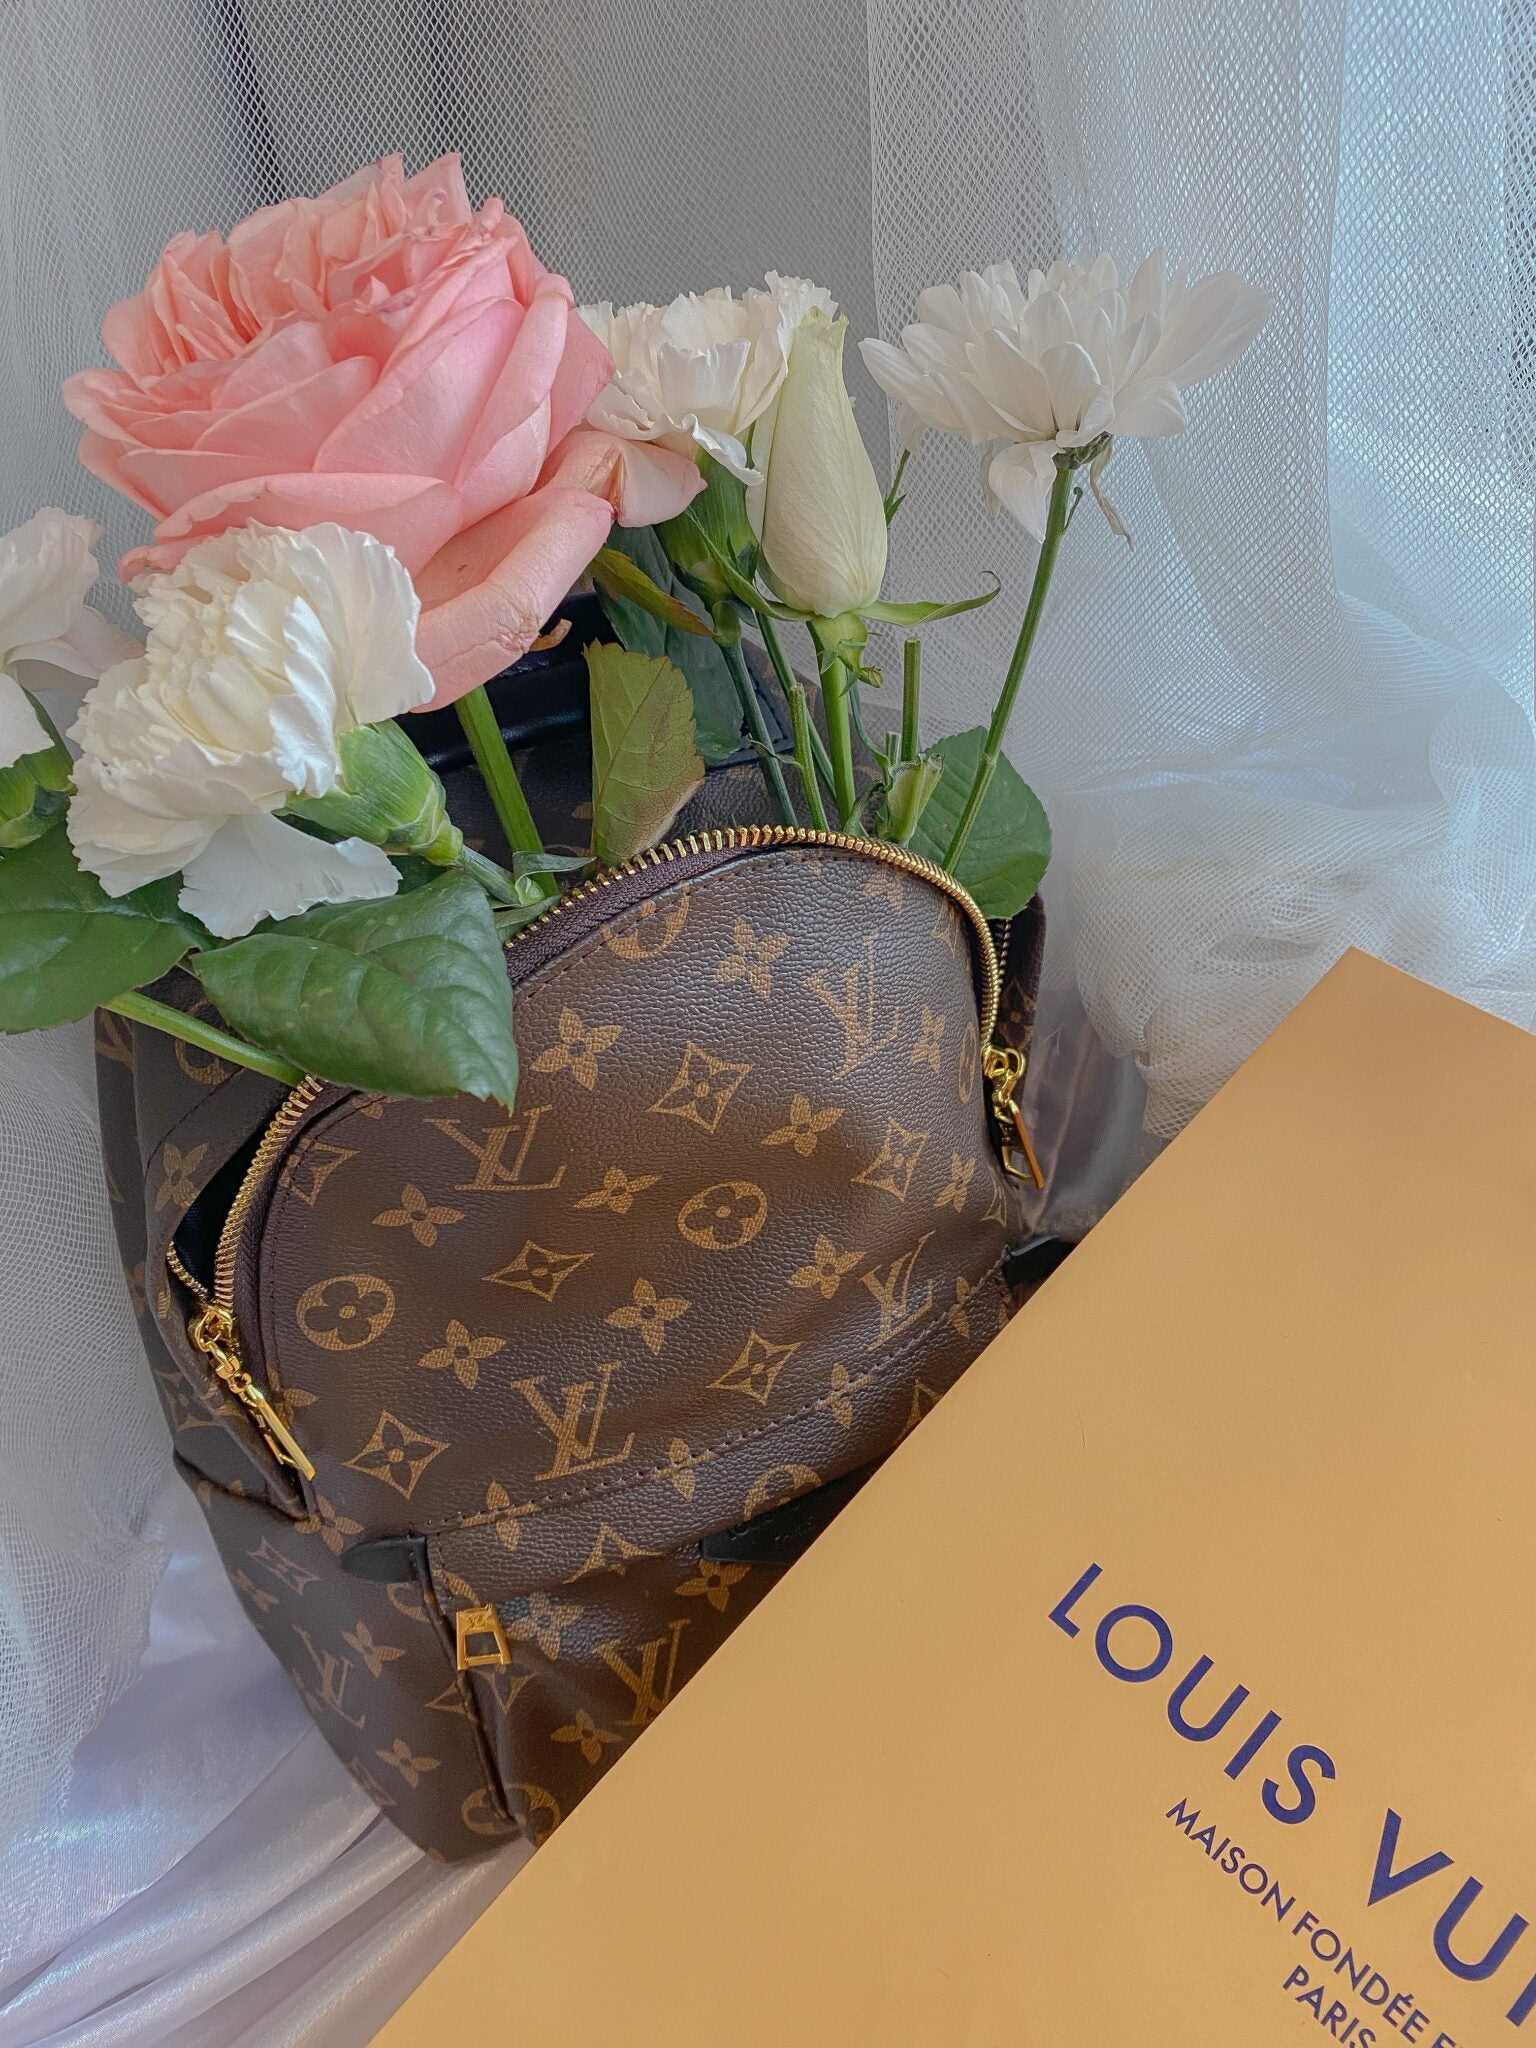 Rent a Louis Vuitton bag